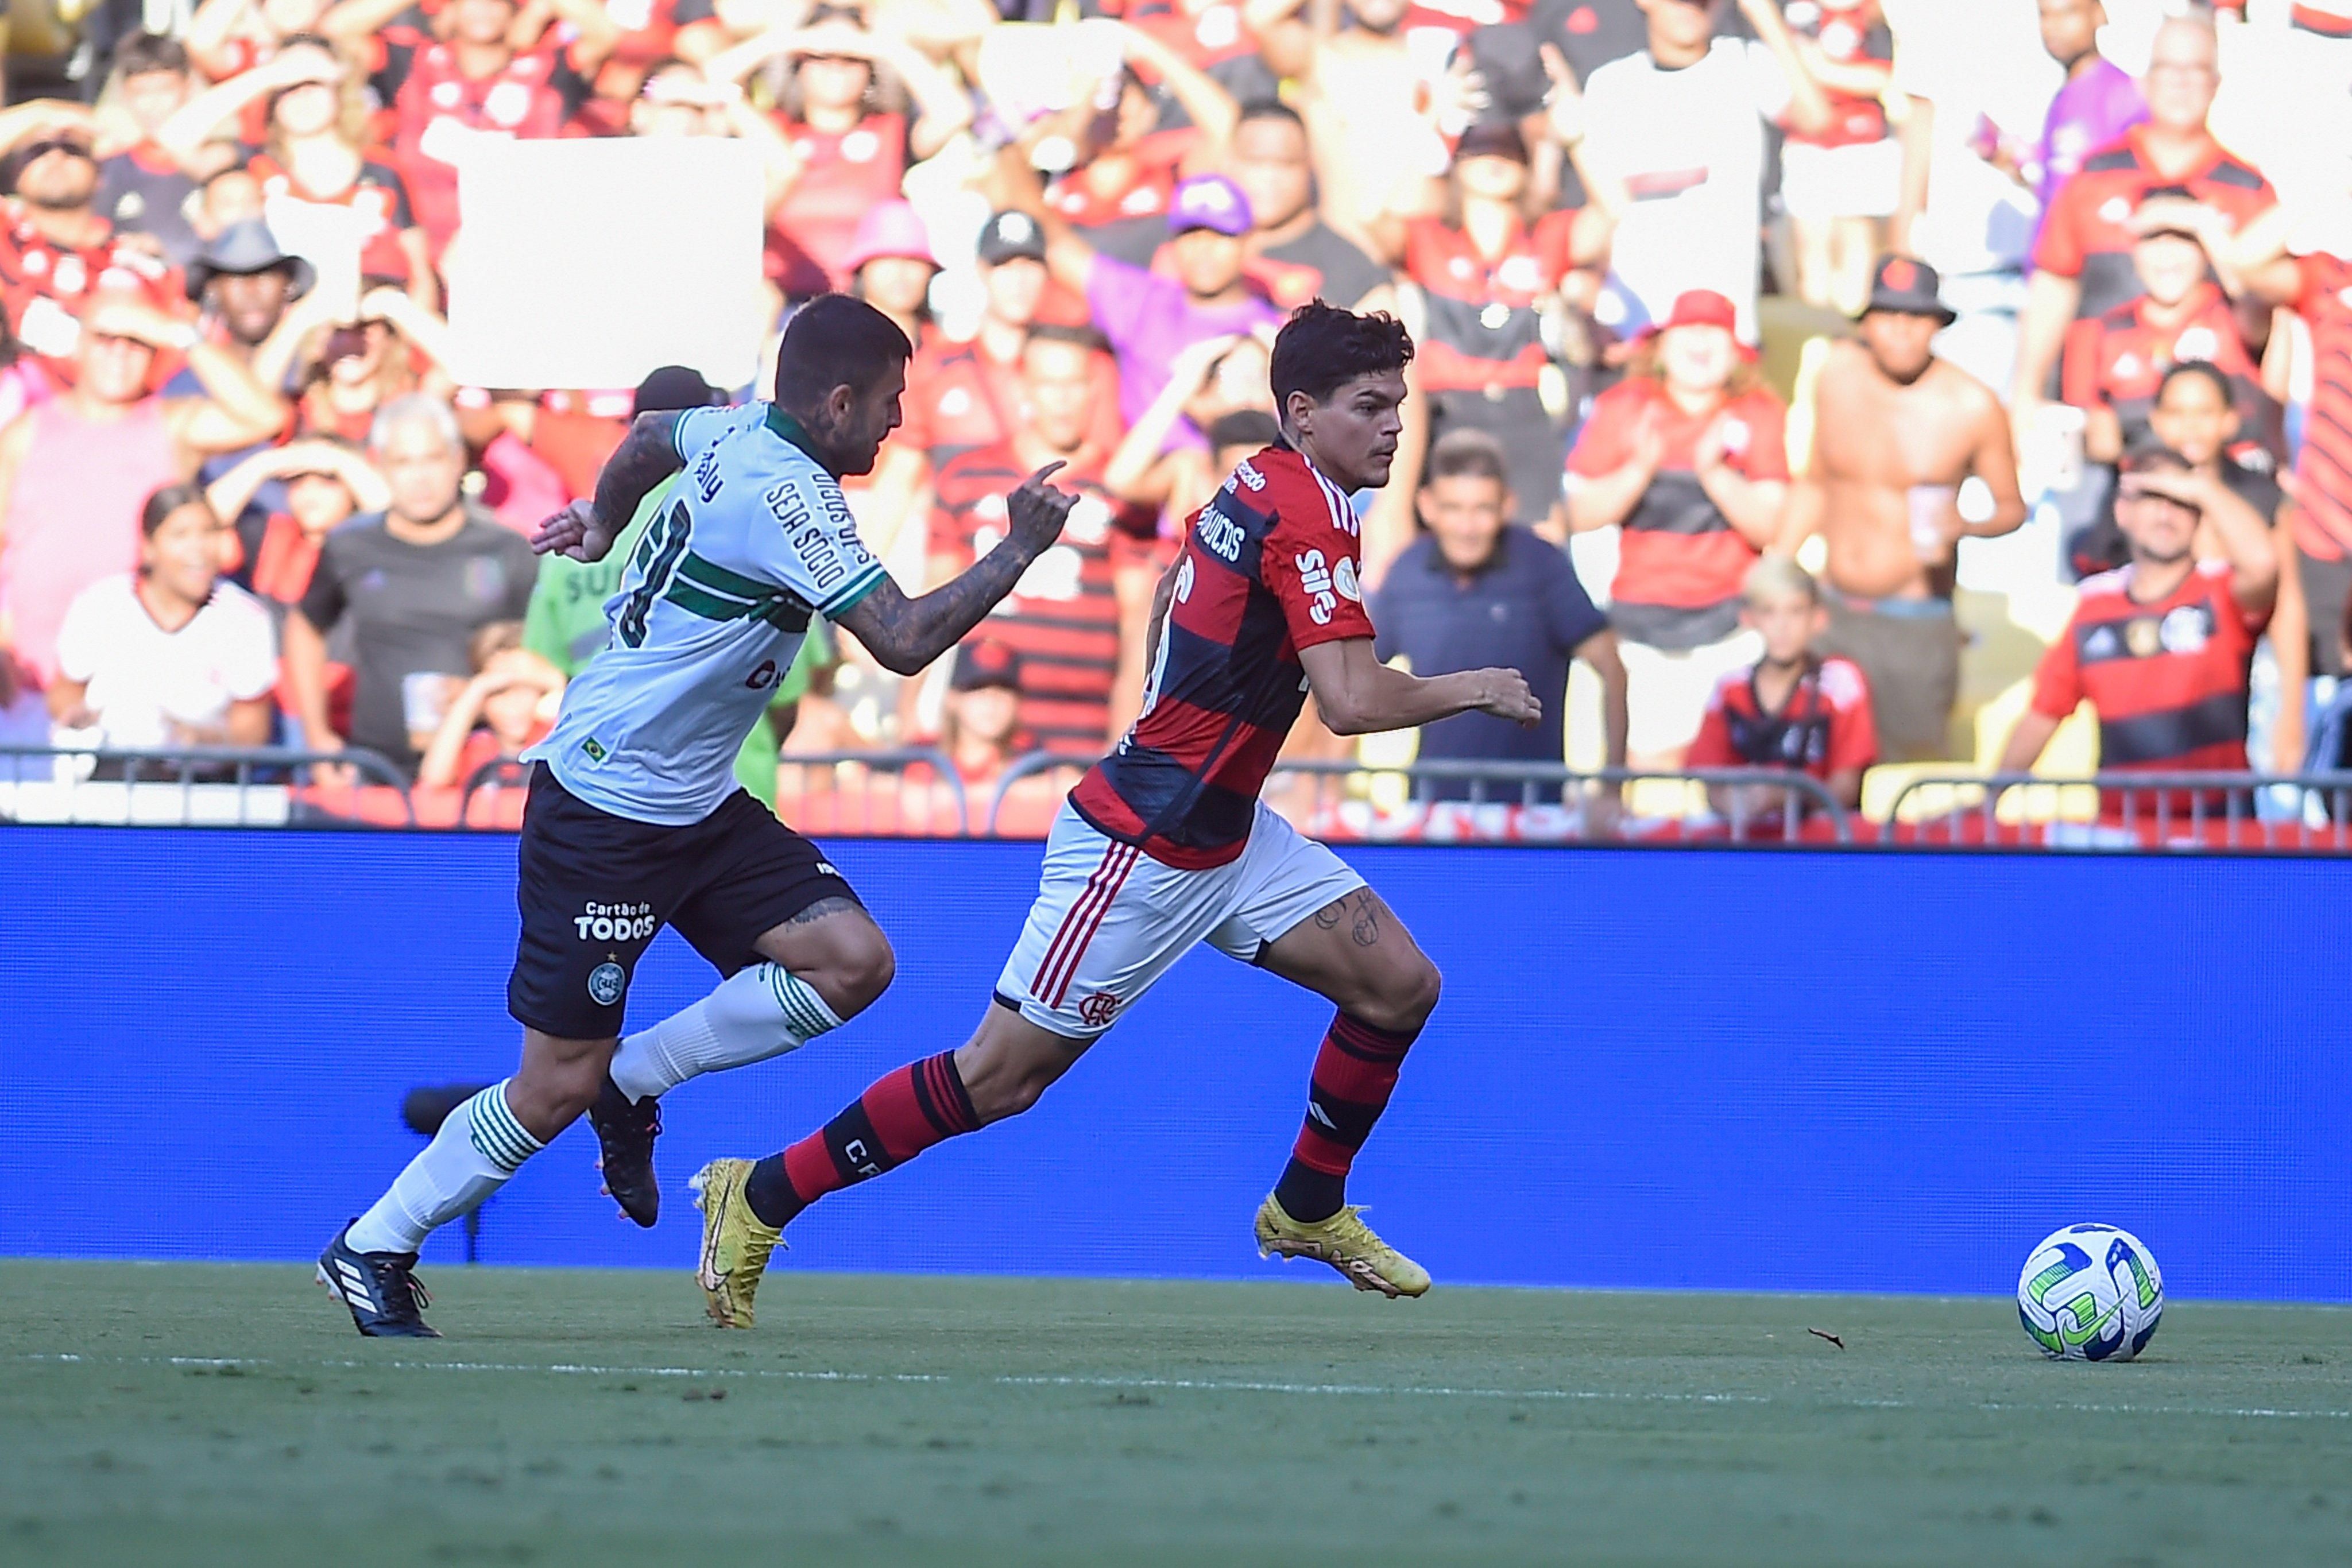 Santos vence Goiás em jogo maluco, encerra jejum e se afasta do Z4